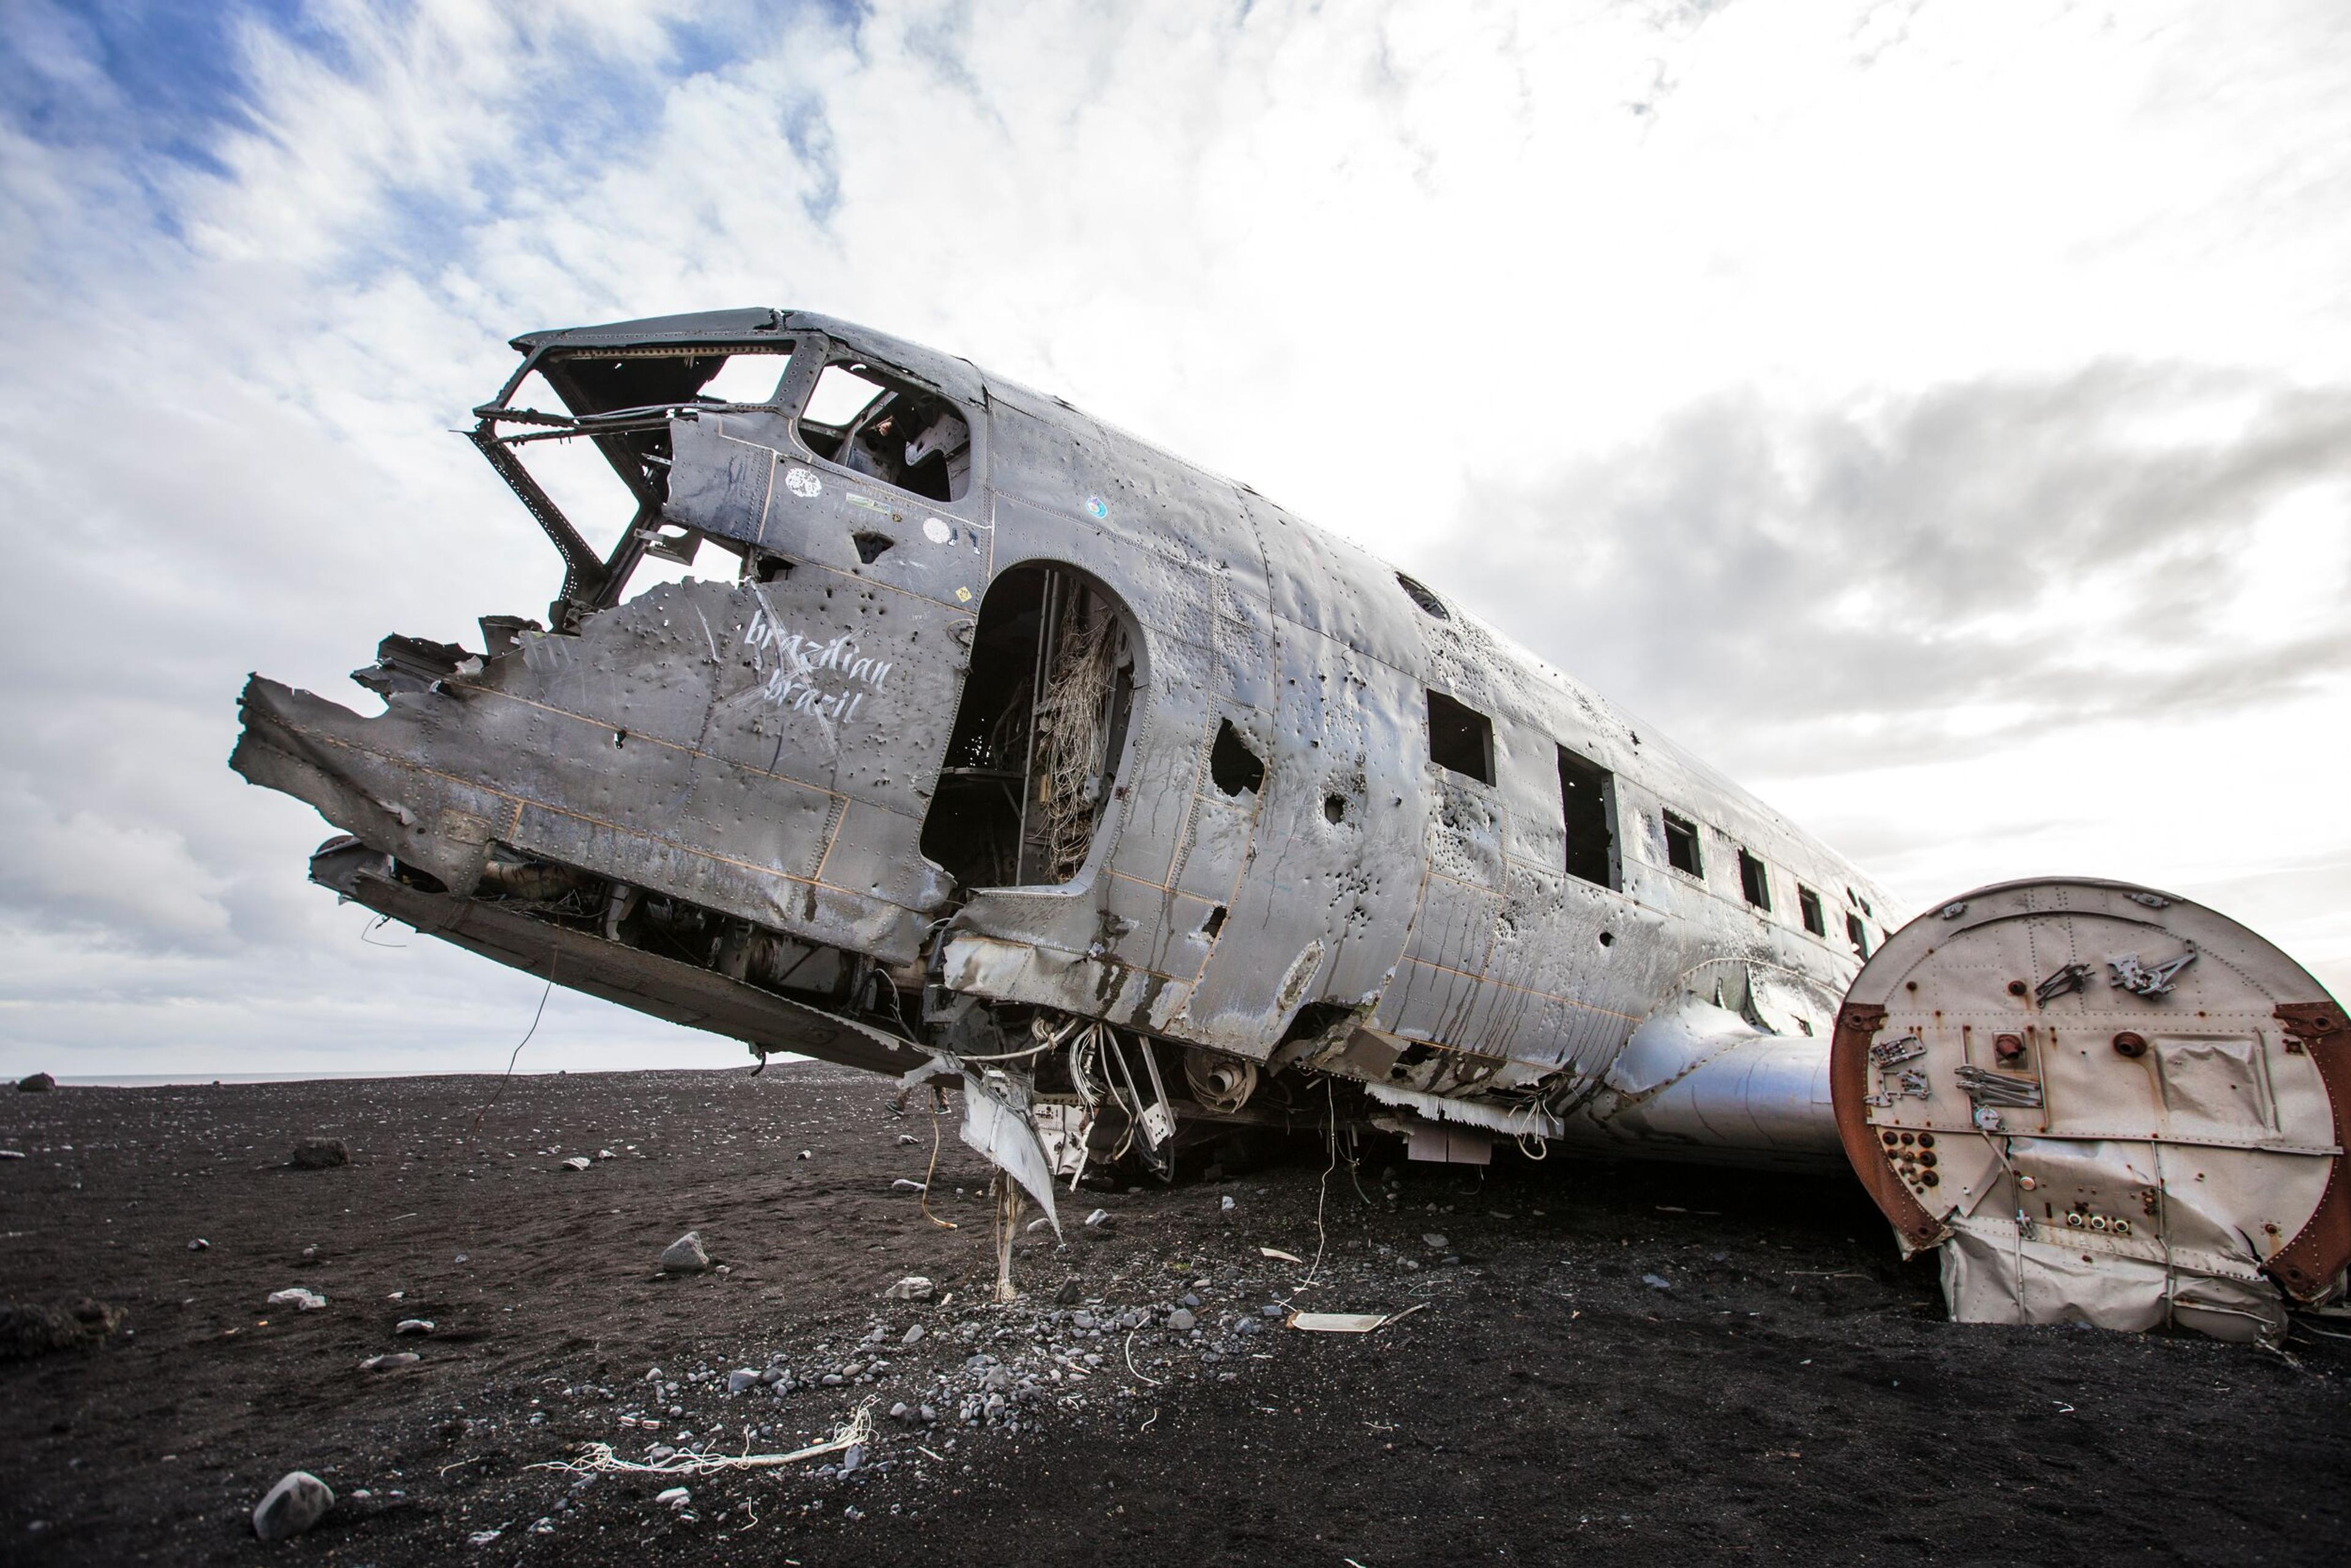 Sólheimasandur, airplane wreck, flugvélaflak, c-117